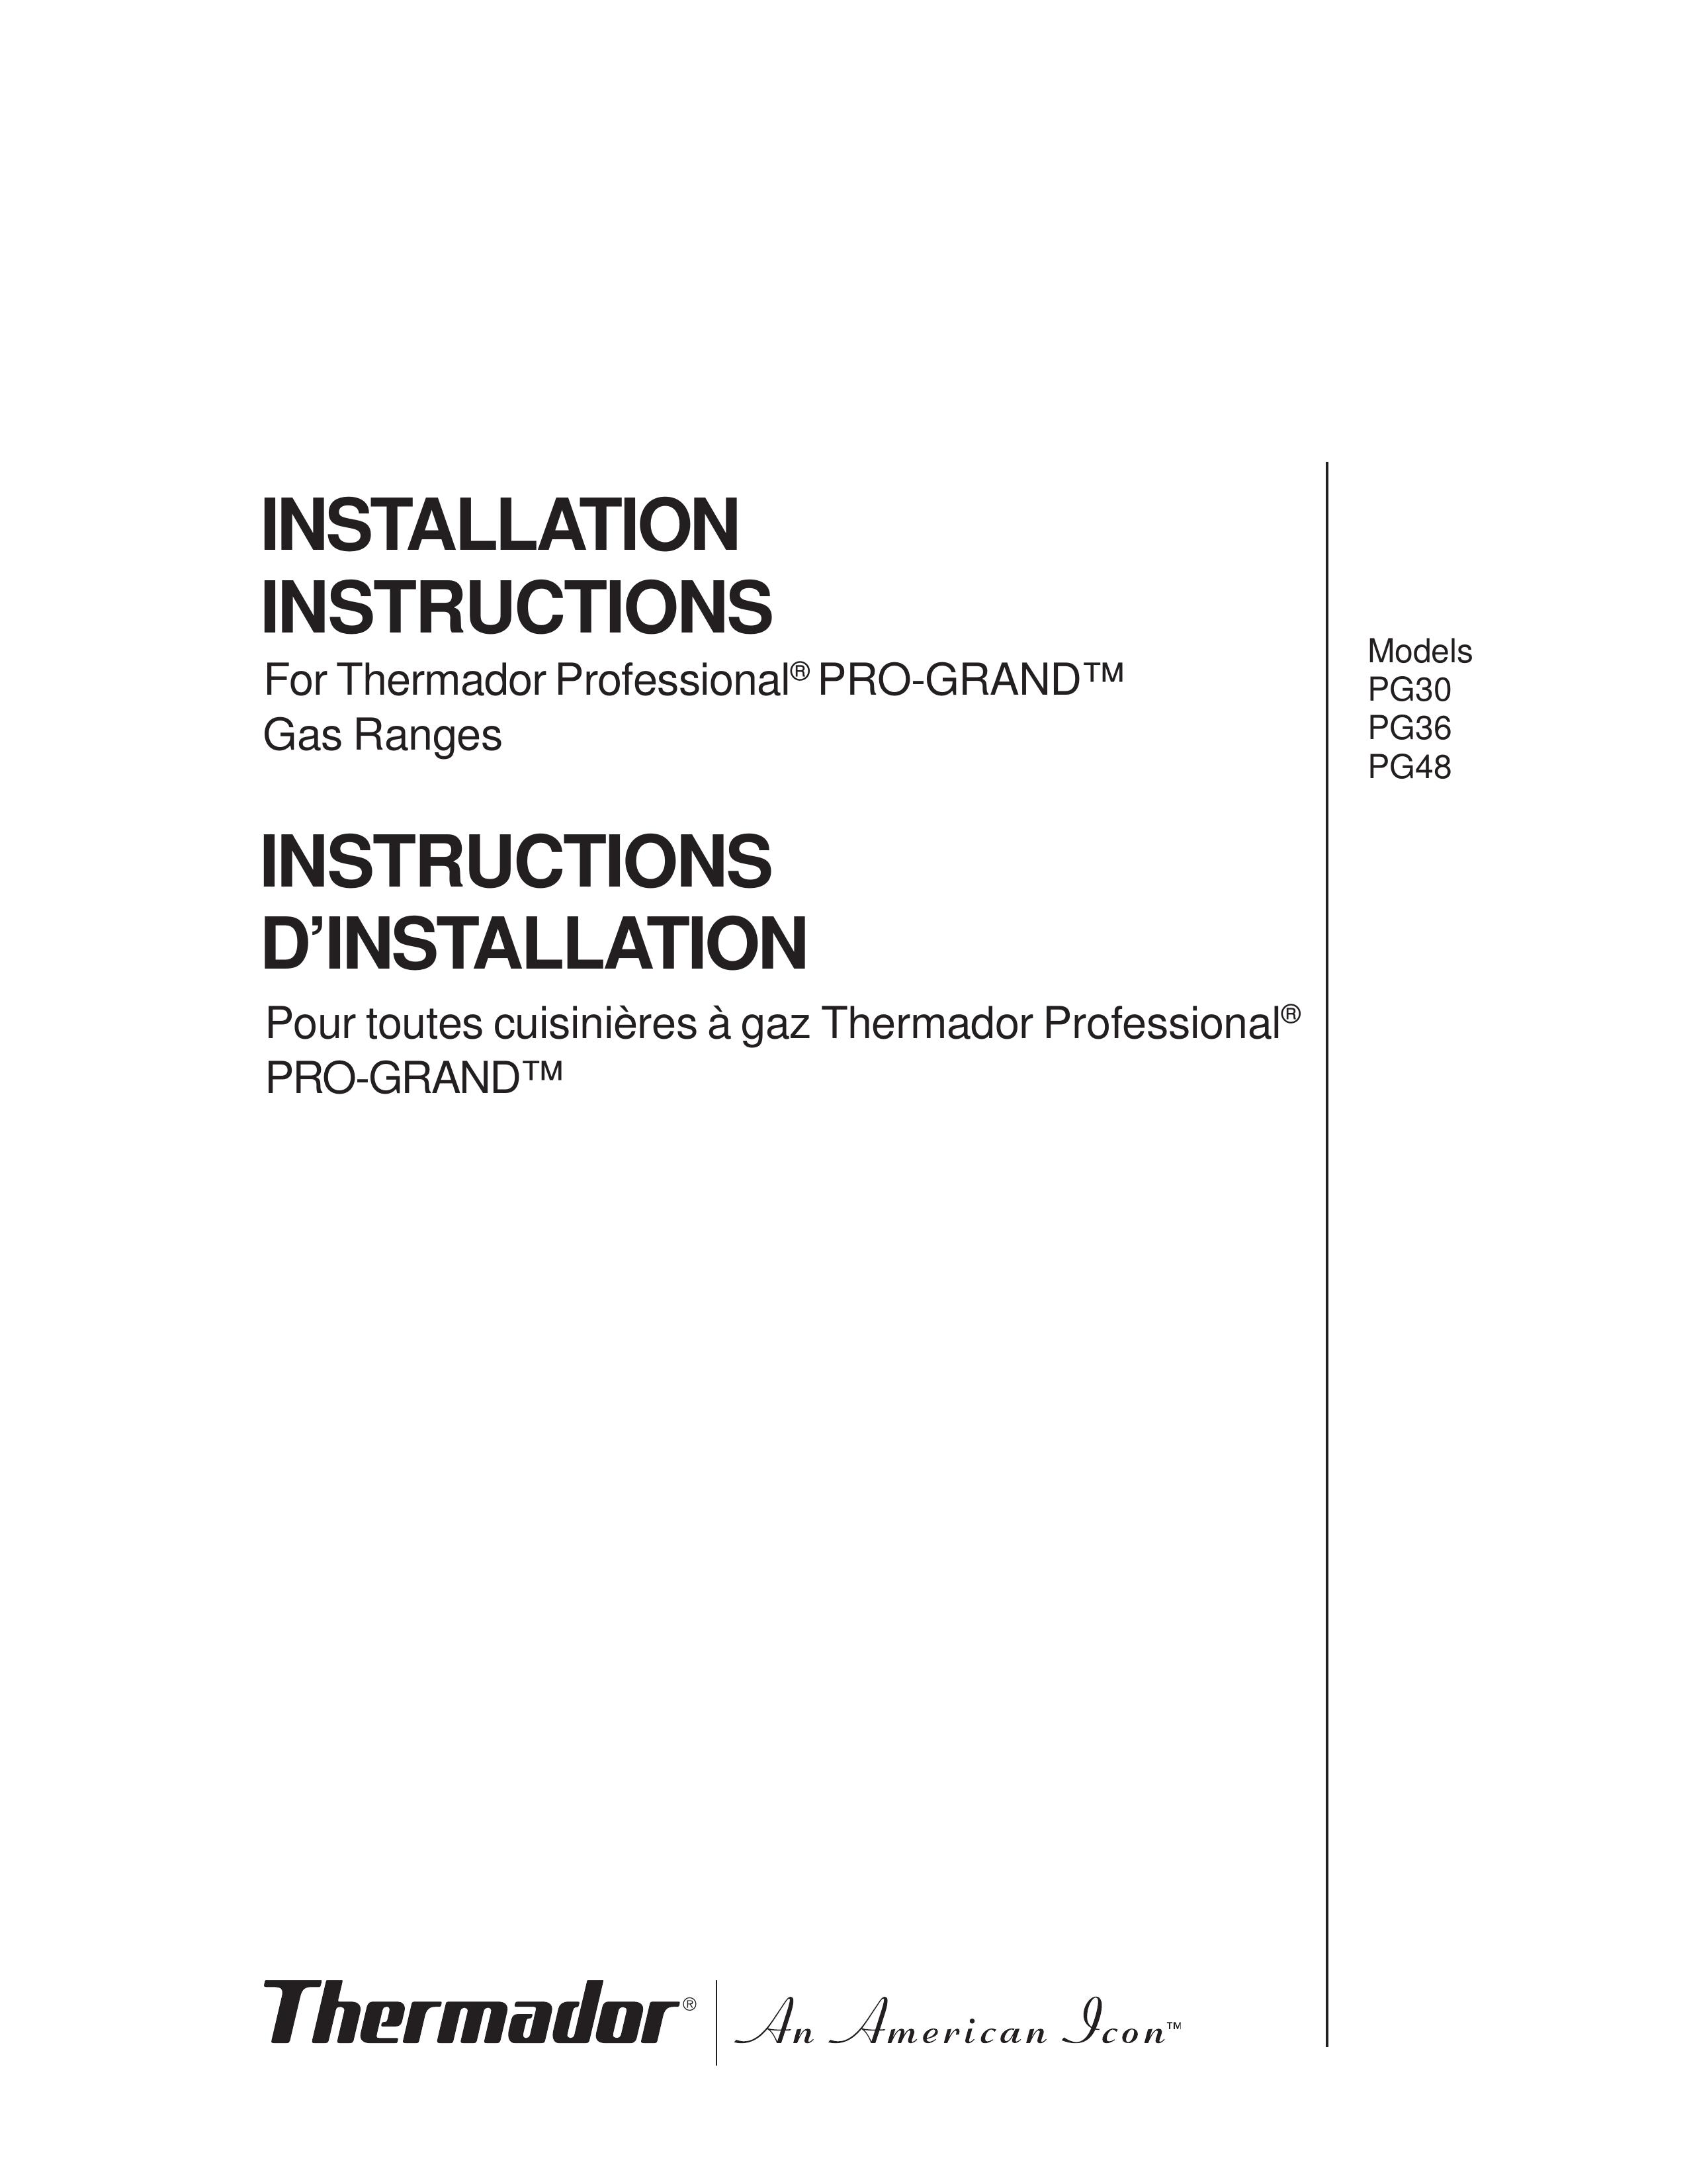 Thermador PG30 Range User Manual